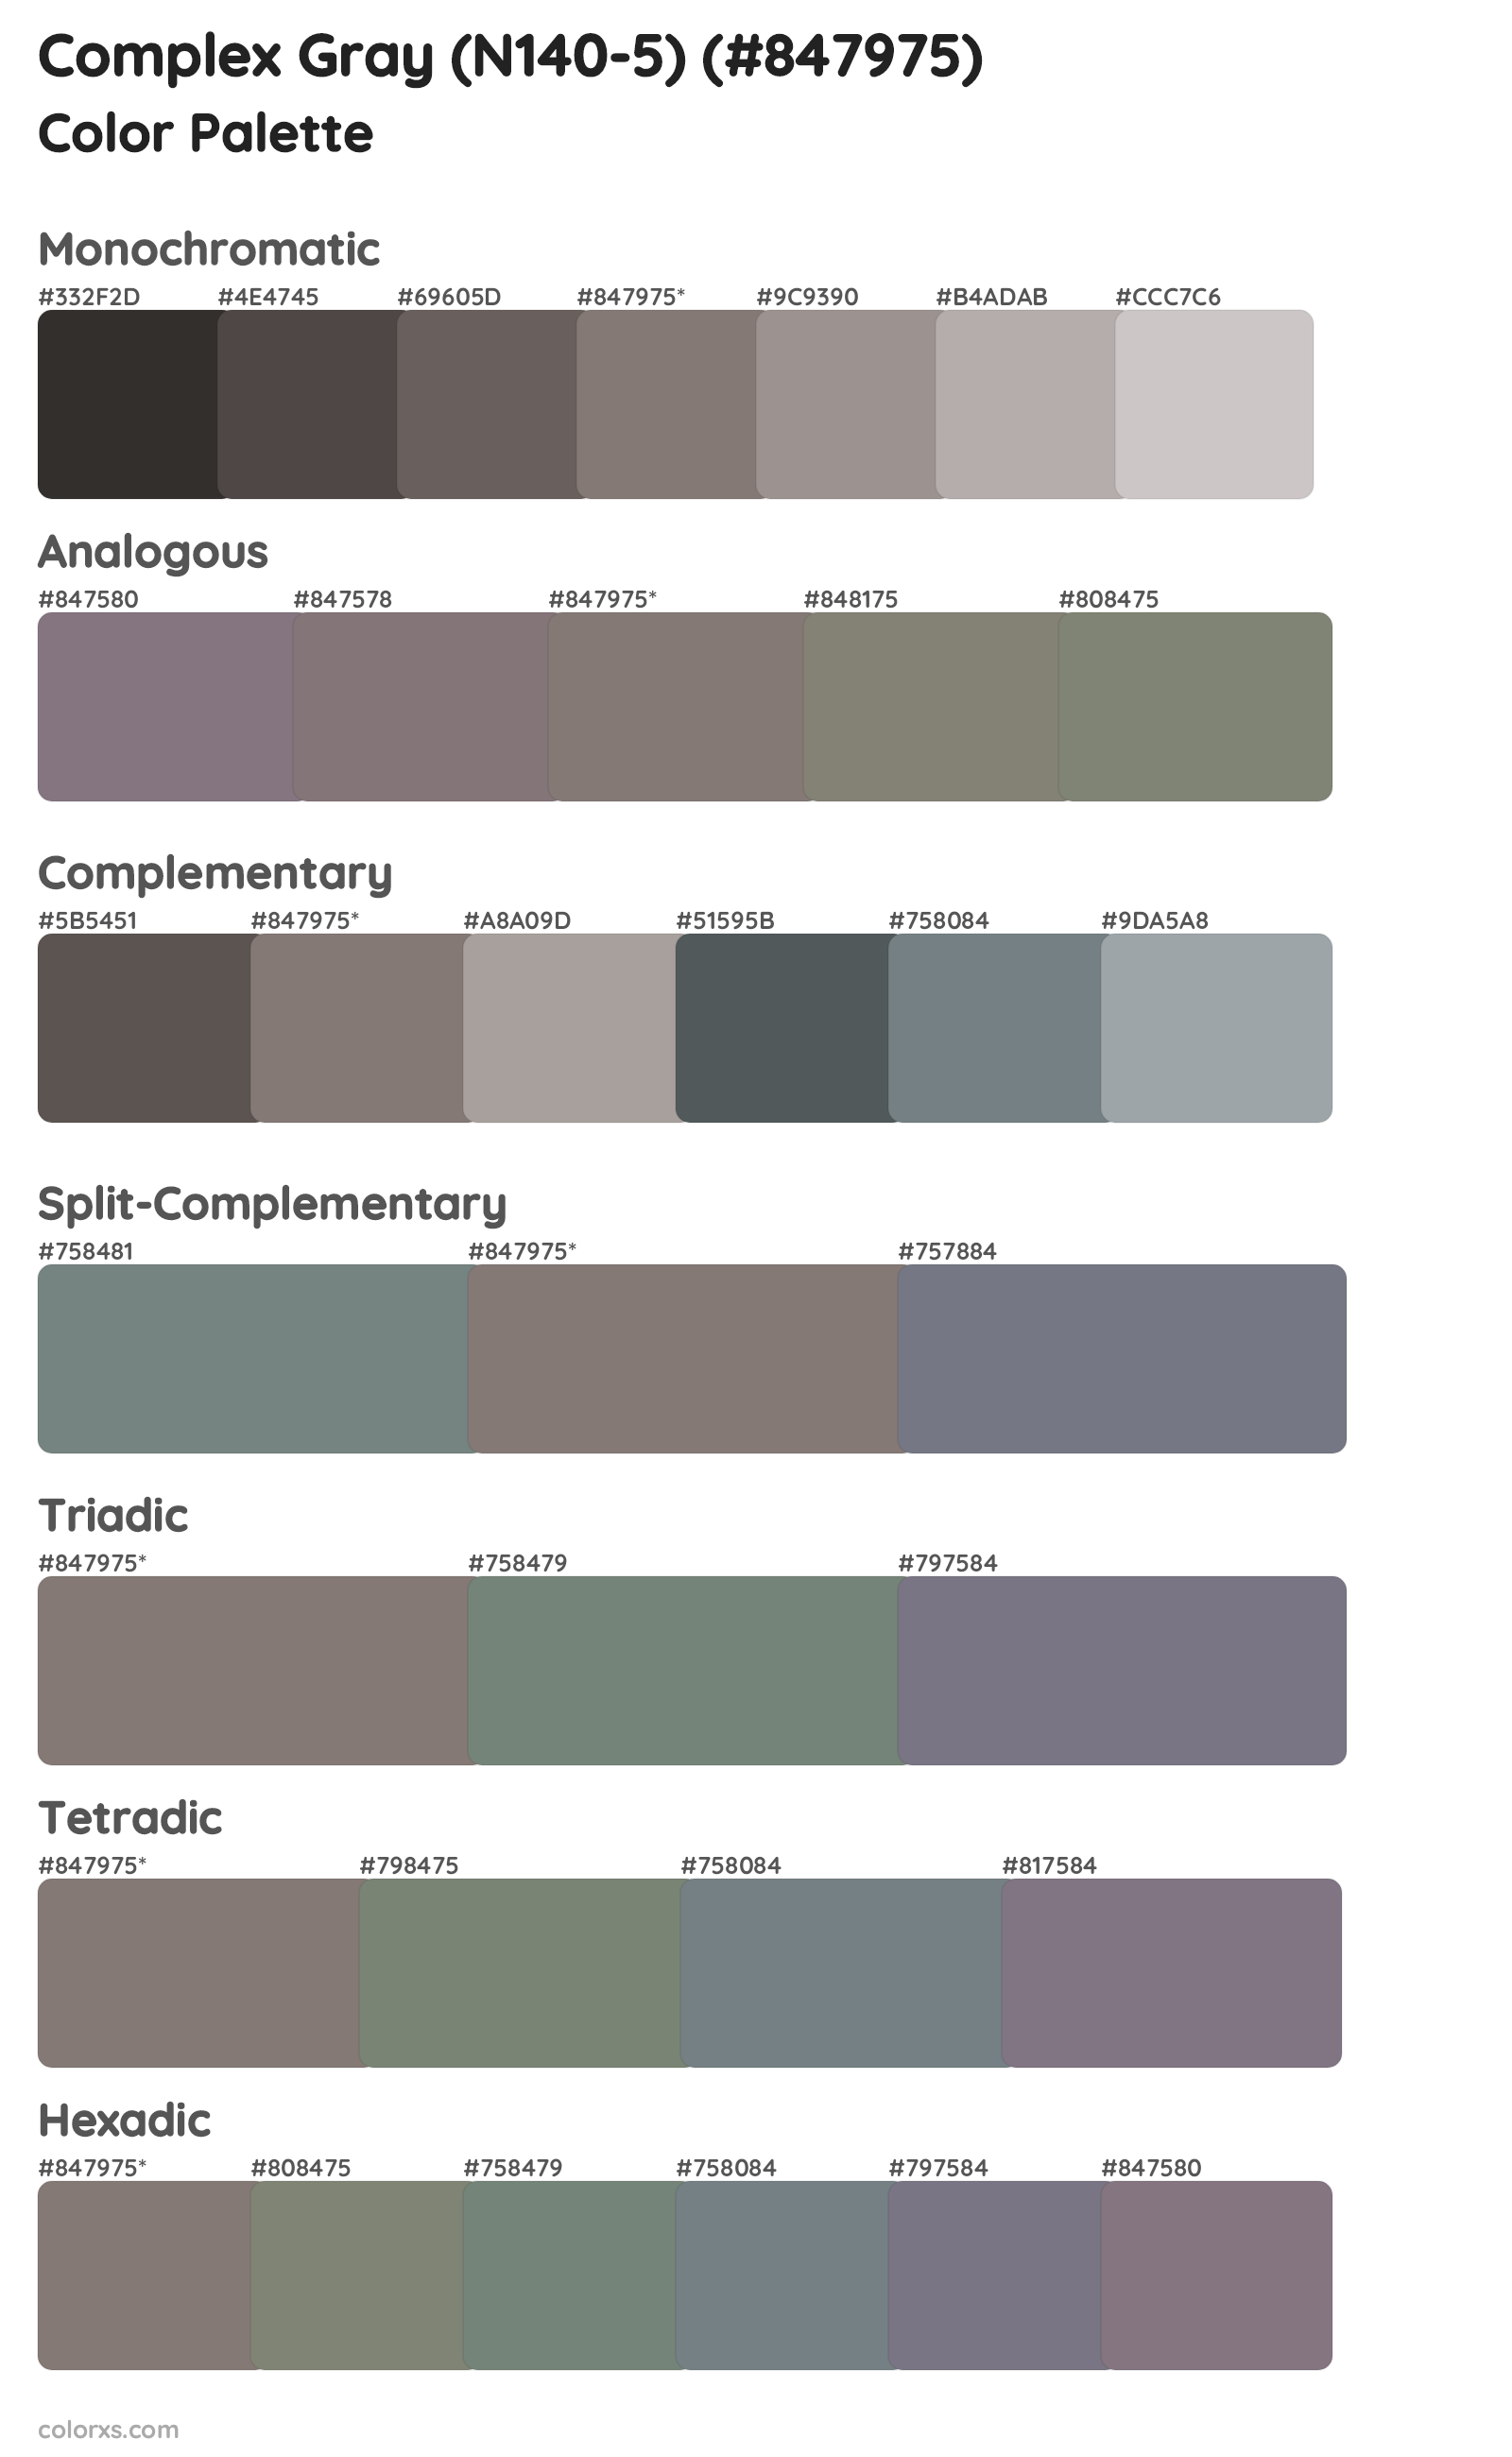 Complex Gray (N140-5) Color Scheme Palettes